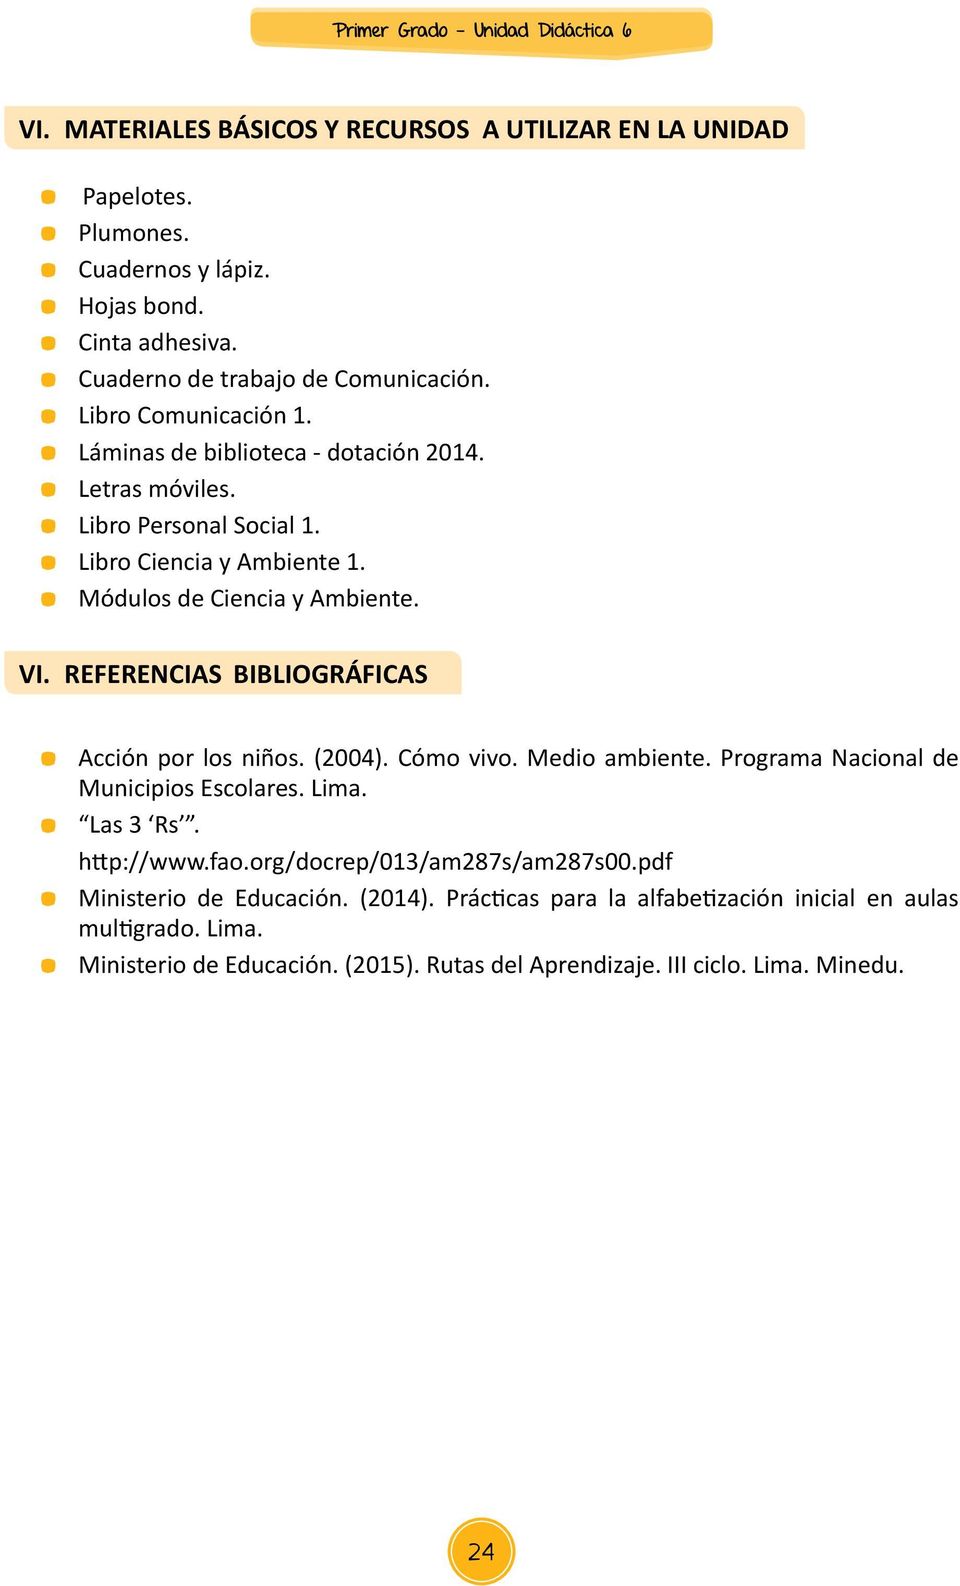 REFERENCIAS BIBLIOGRÁFICAS Acción por los niños. (2004). Cómo vivo. Medio ambiente. Programa Nacional de Municipios Escolares. Lima. Las 3 Rs. http://www.fao.